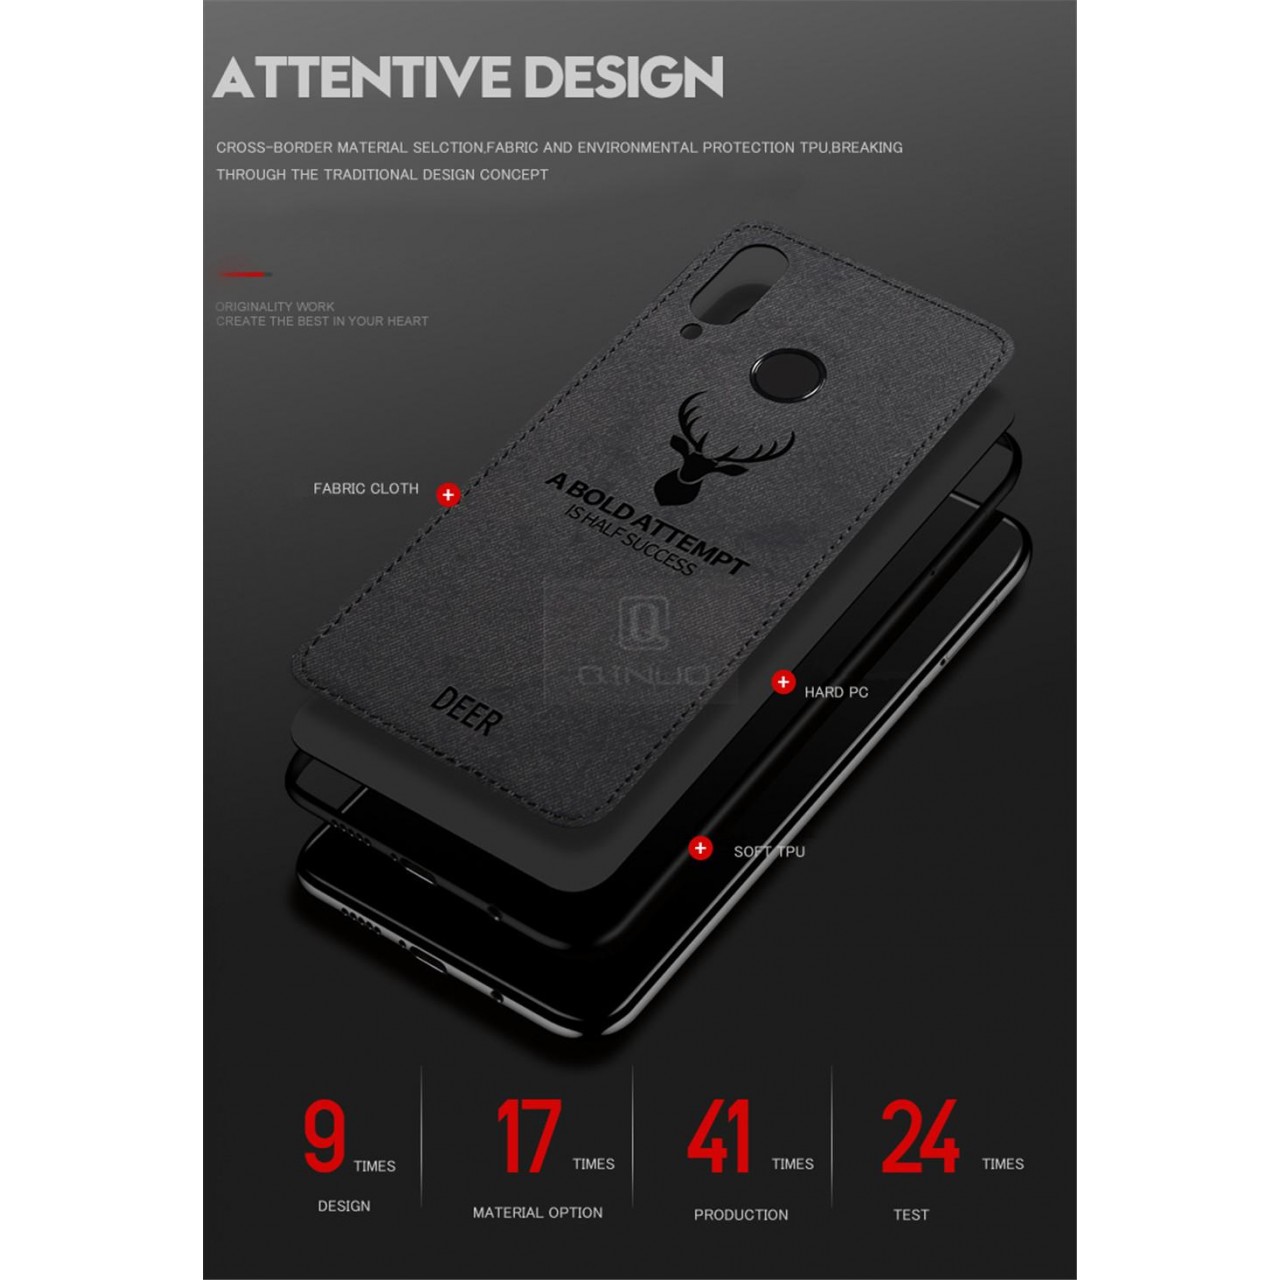 Samsung Galaxy A22 5G - Θήκη Προστασίας Κινητού - Mobile Case Fabric Red